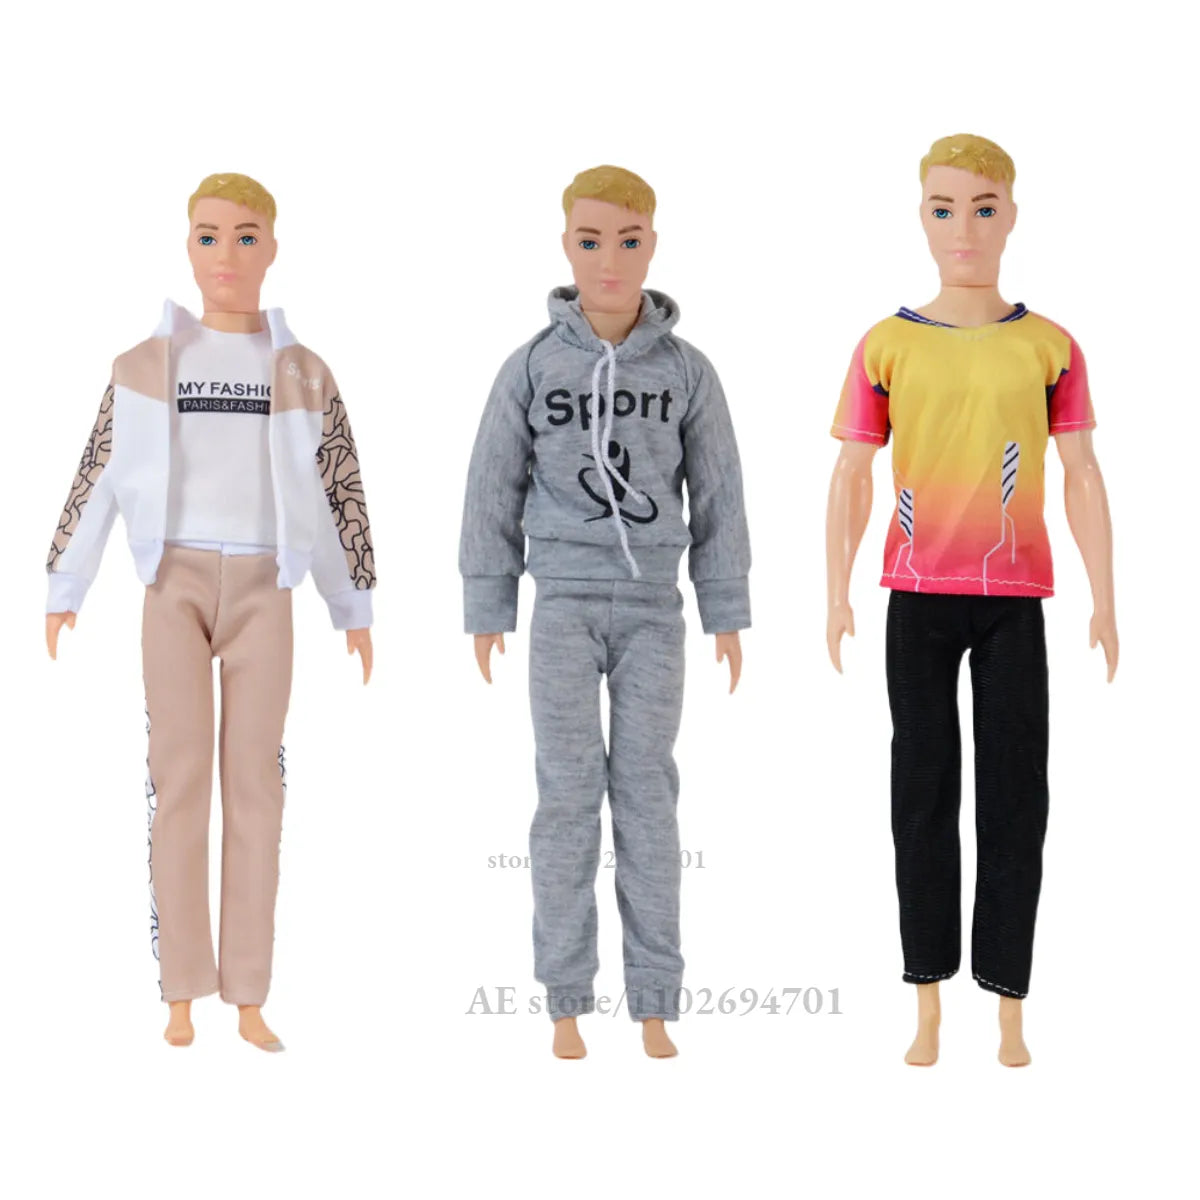 Ropa de moda para niña, muñeca masculina BJD Ken Boy Friend, Barbie Blyth MH CD FR SD Kurhn, 1/6, 30cm, accesorios de ropa, juguete para regalo